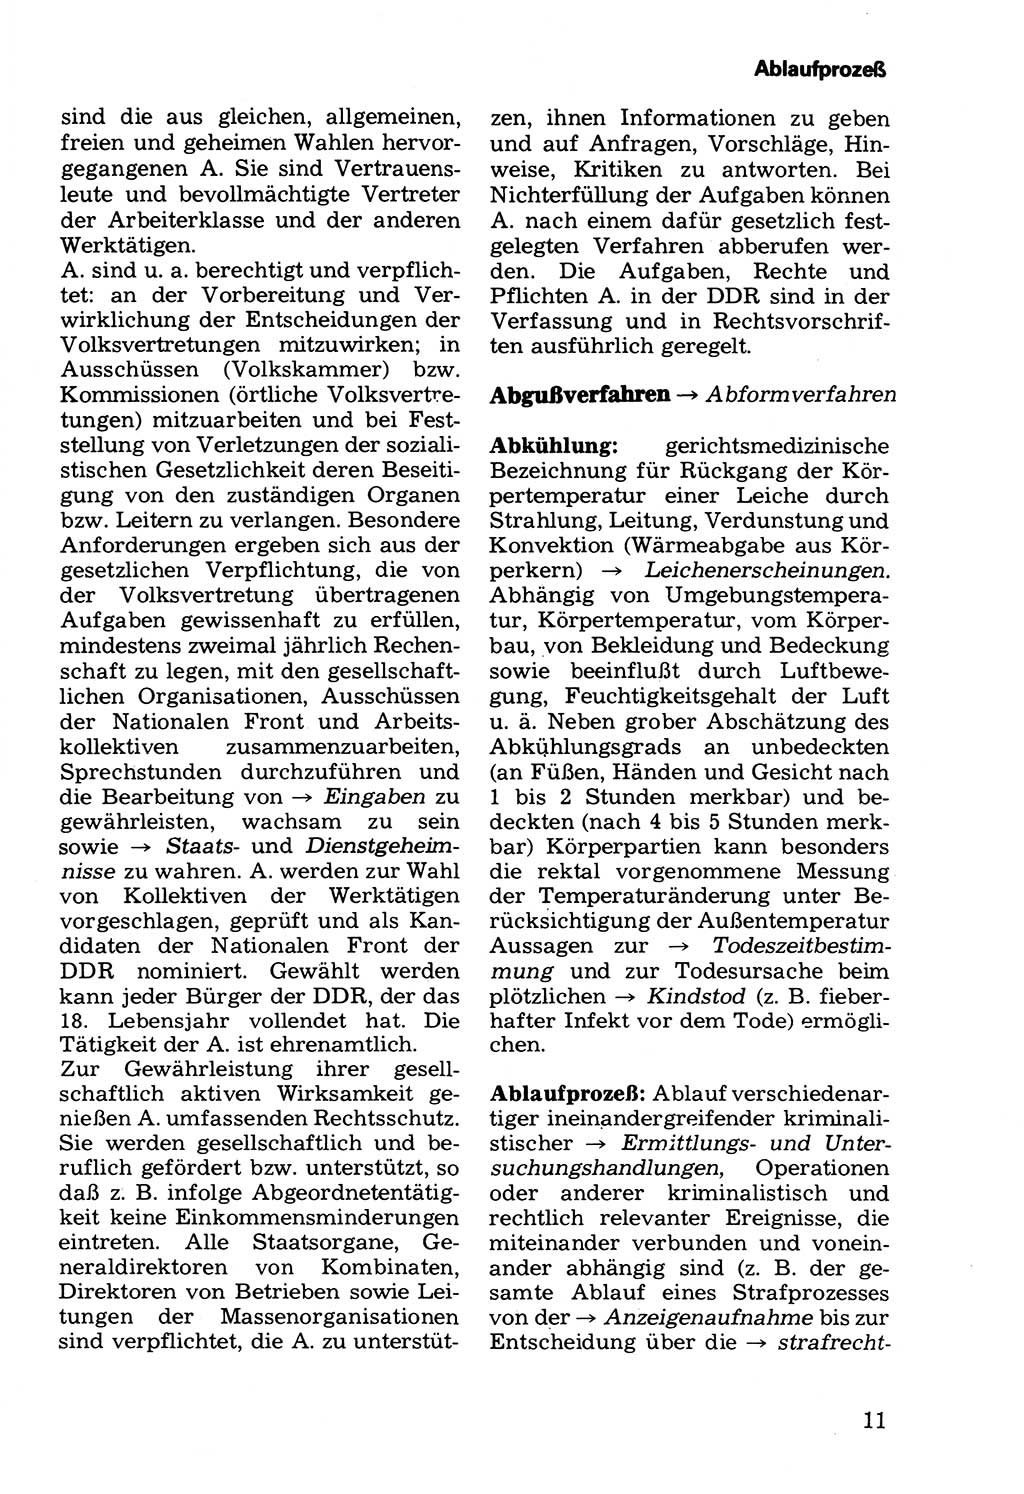 Wörterbuch der sozialistischen Kriminalistik [Deutsche Demokratische Republik (DDR)] 1981, Seite 11 (Wb. soz. Krim. DDR 1981, S. 11)